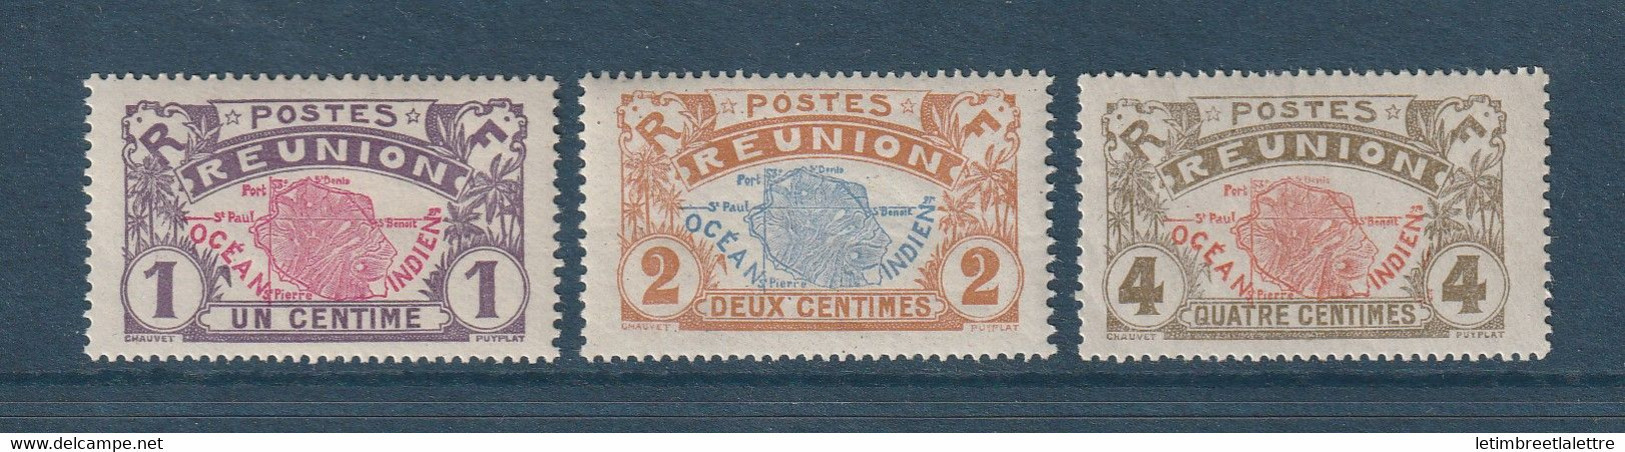 Réunion - YT N° 56 à 58 ** - Neuf Sans Charnière - 1907 1917 - Neufs